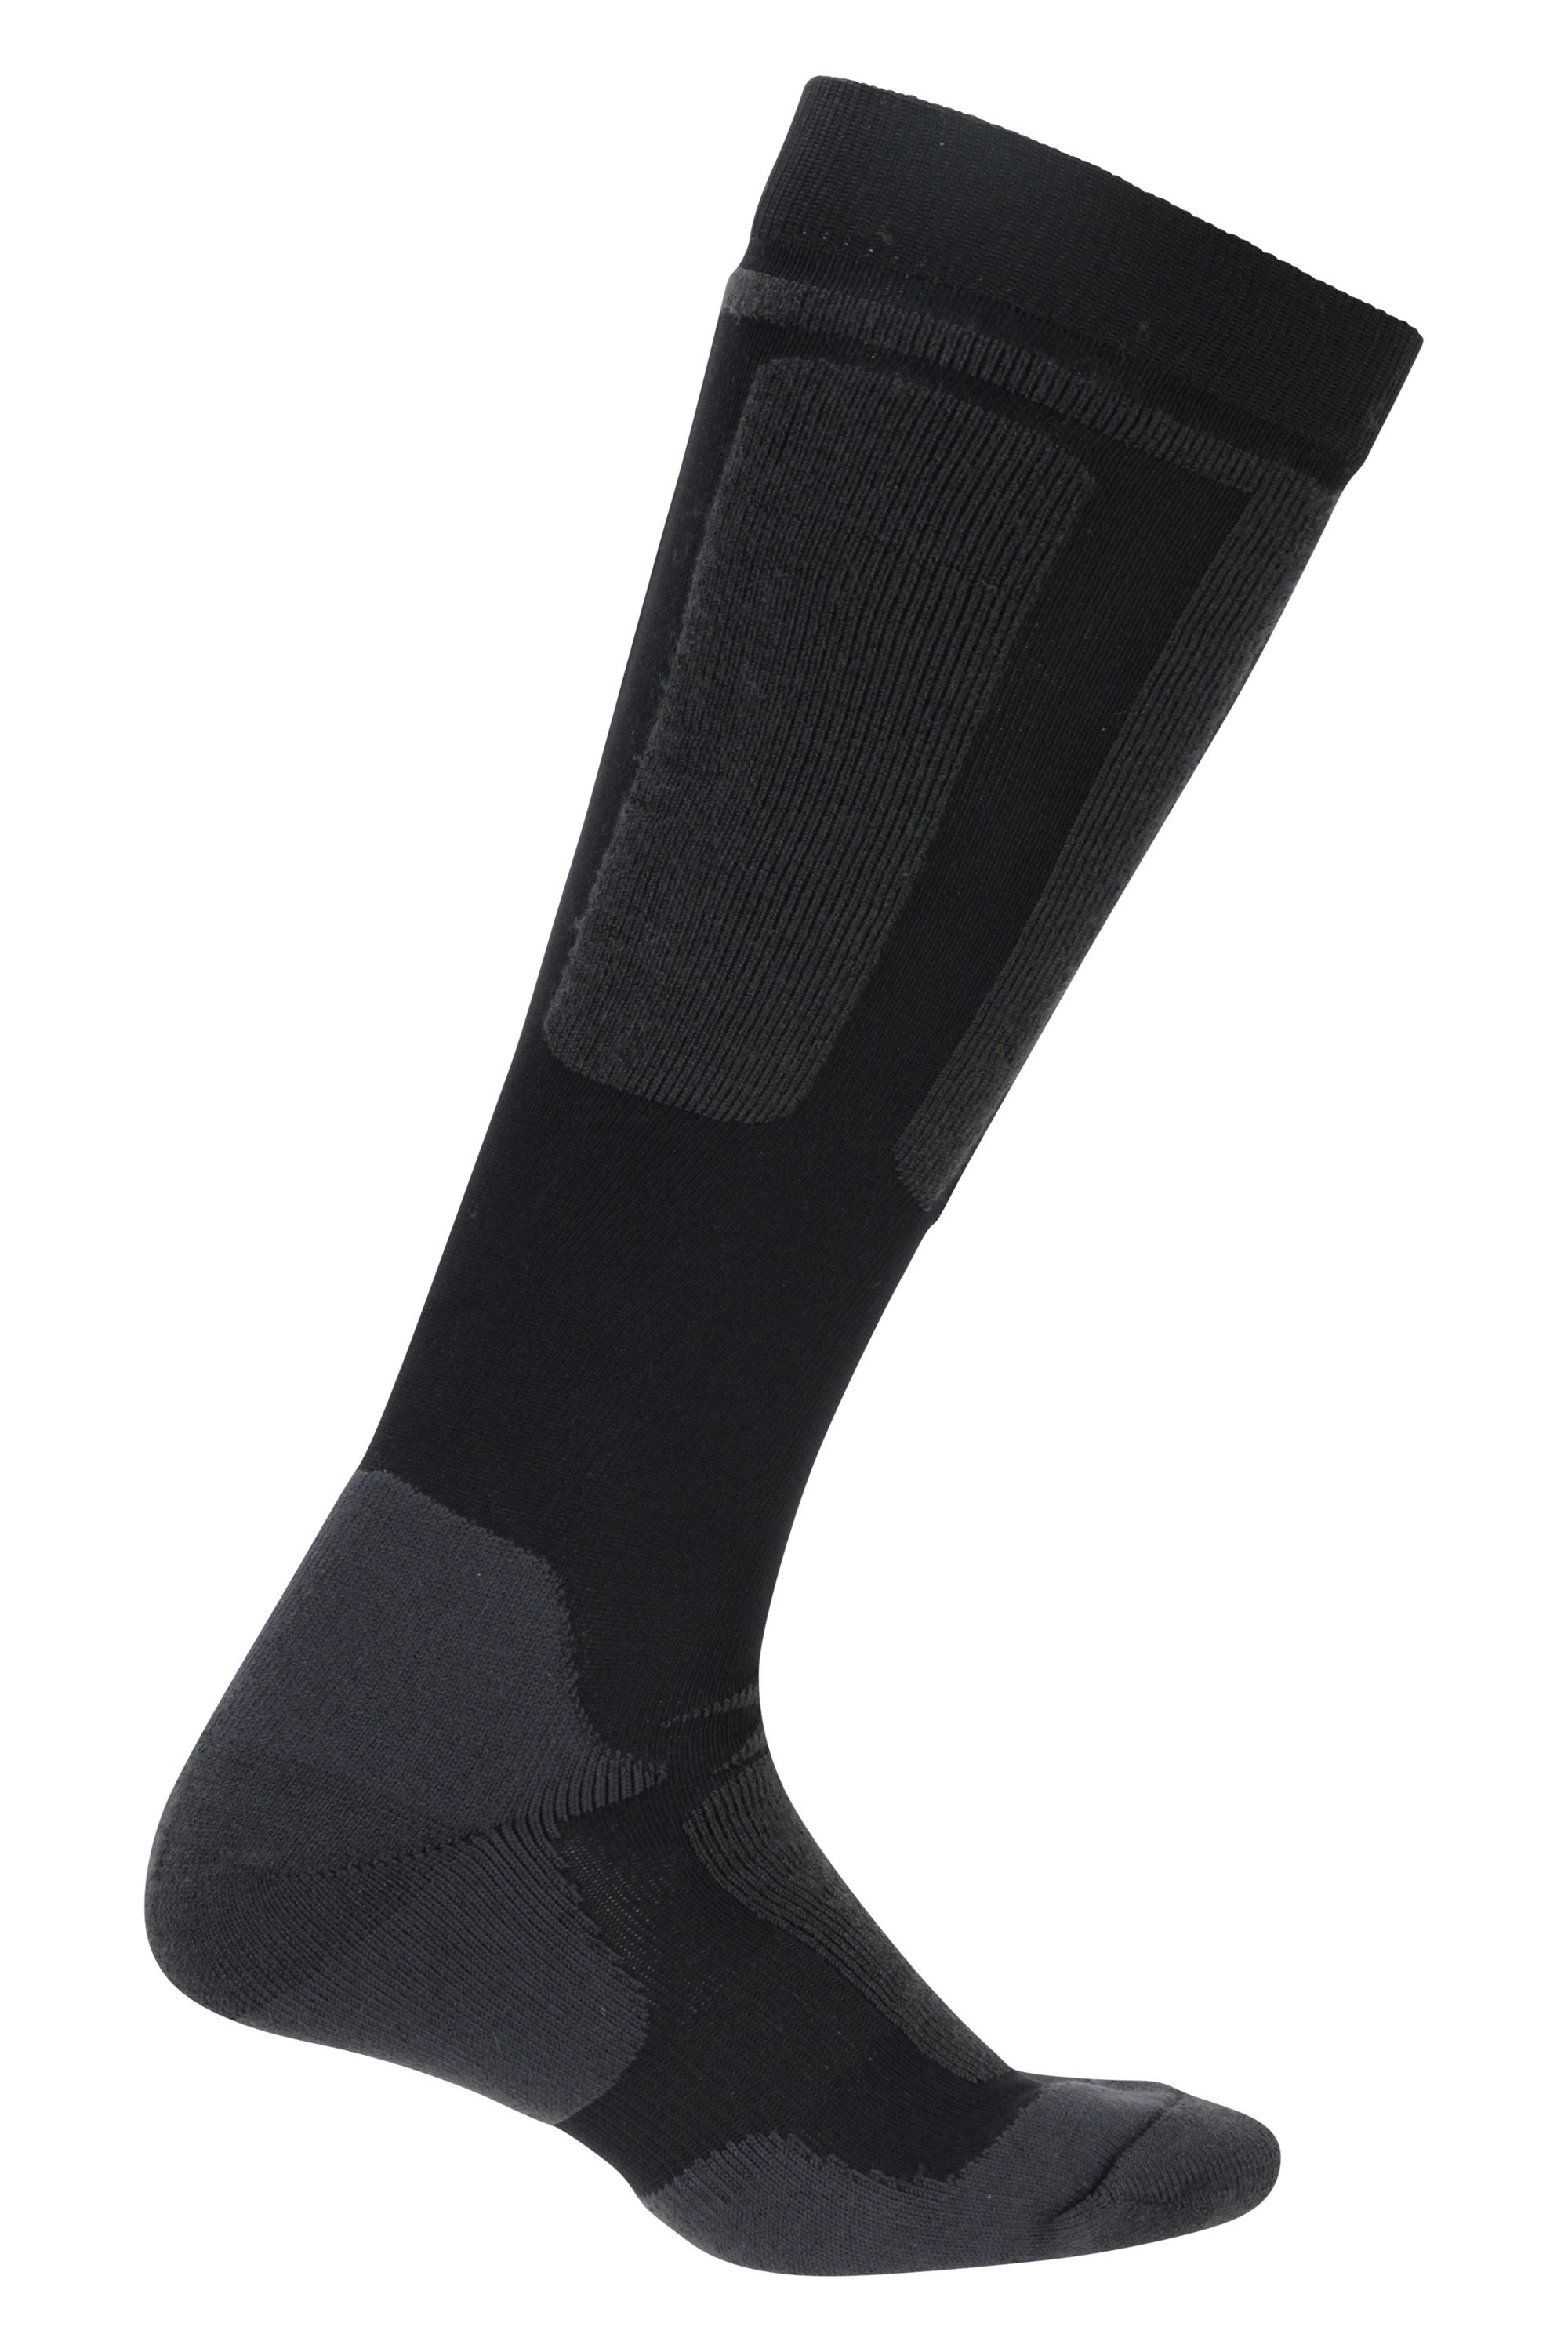 Extreme Mens Merino Thermal Ski Socks Black